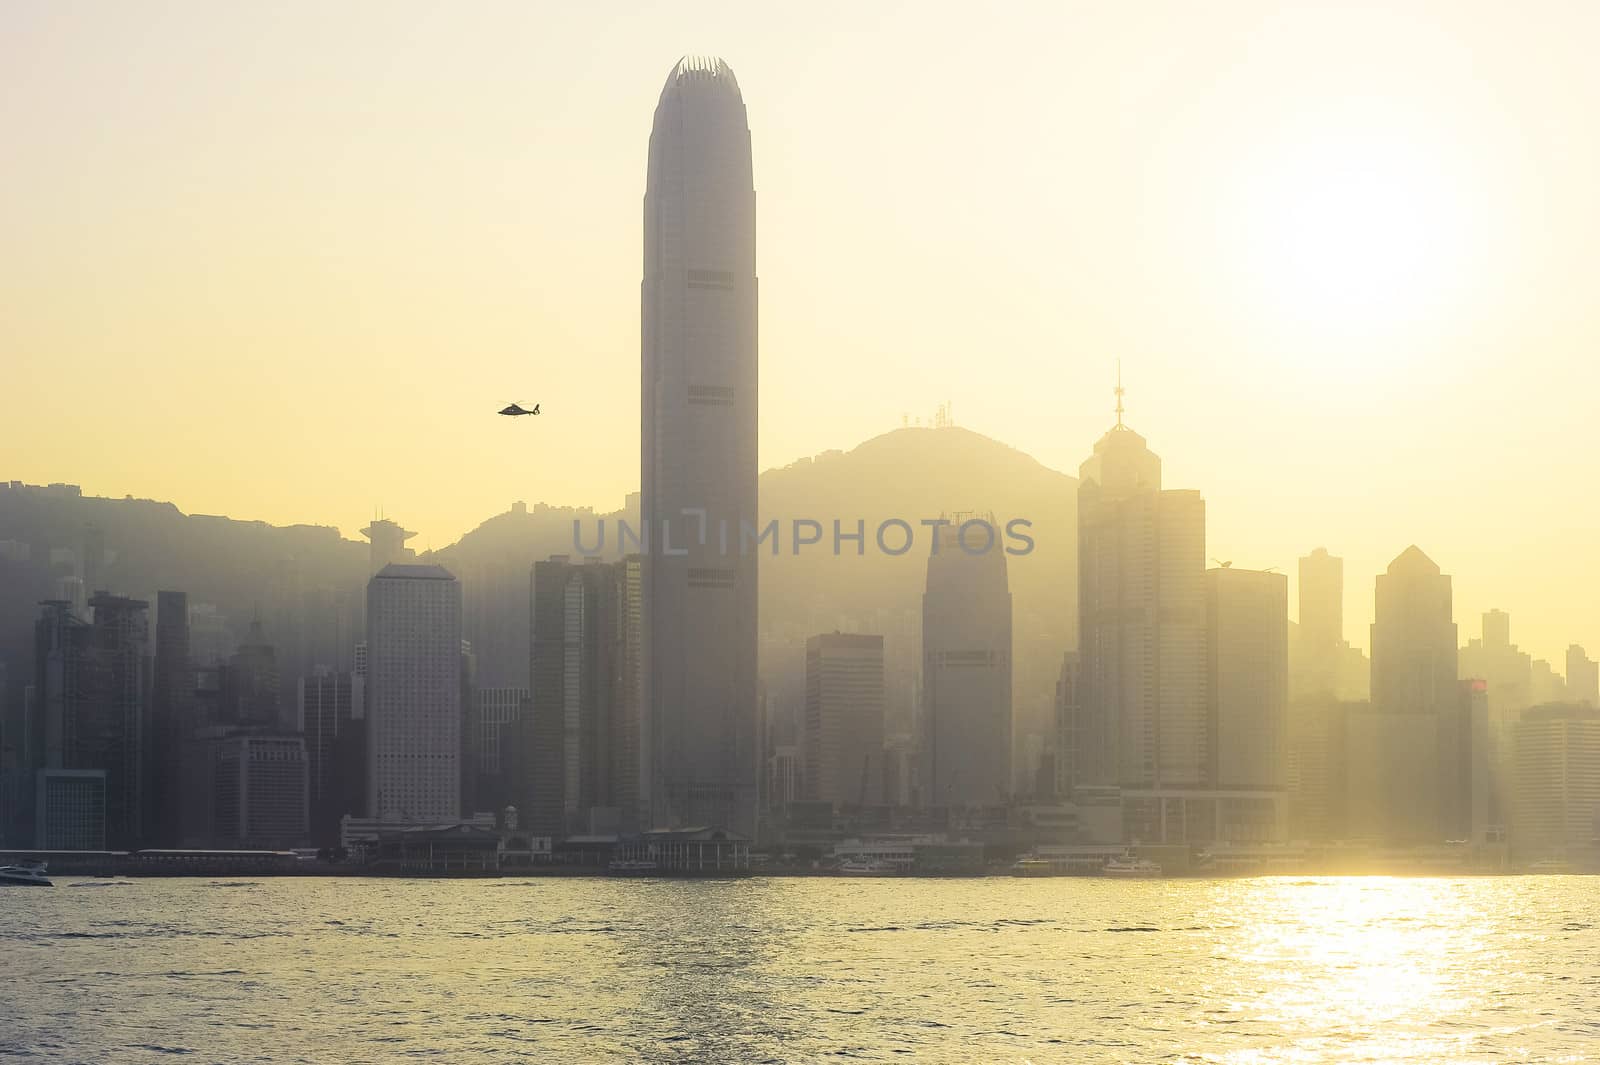 Hong Kong at sunset by joyfull